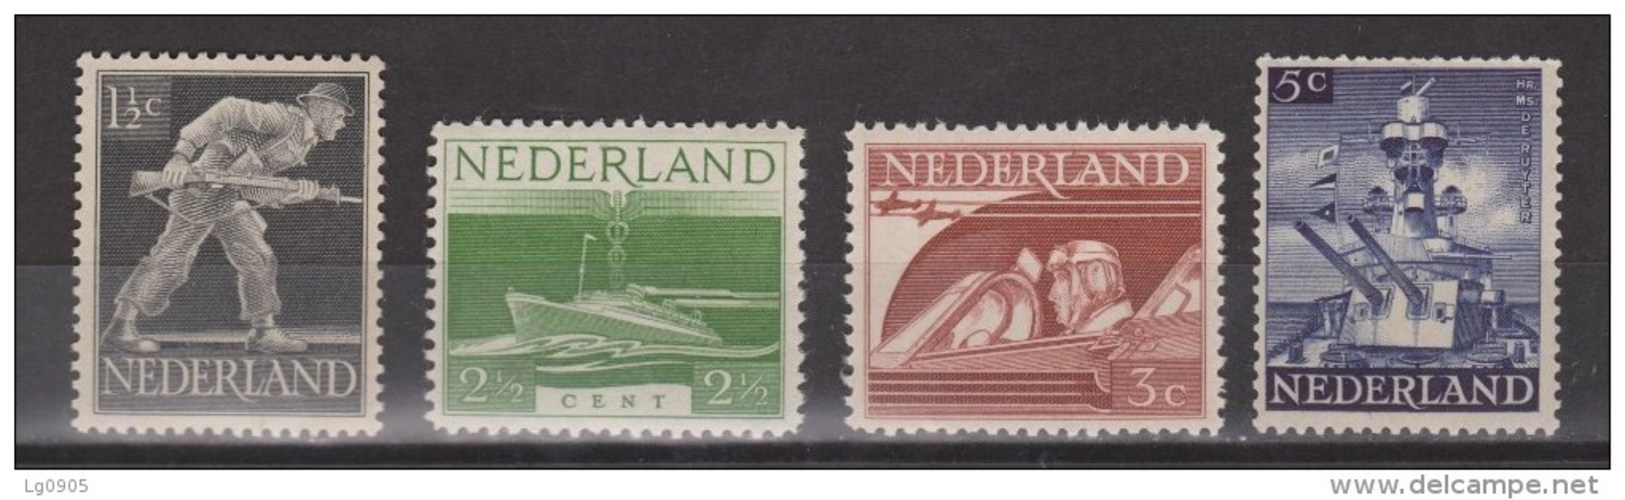 NVPH Nederland Netehrlands Pays Bas Niederlande, Holanda 428 429 430 431 MNH Bevrijdingszegels 1944 ALSO PER PIECE - Ungebraucht